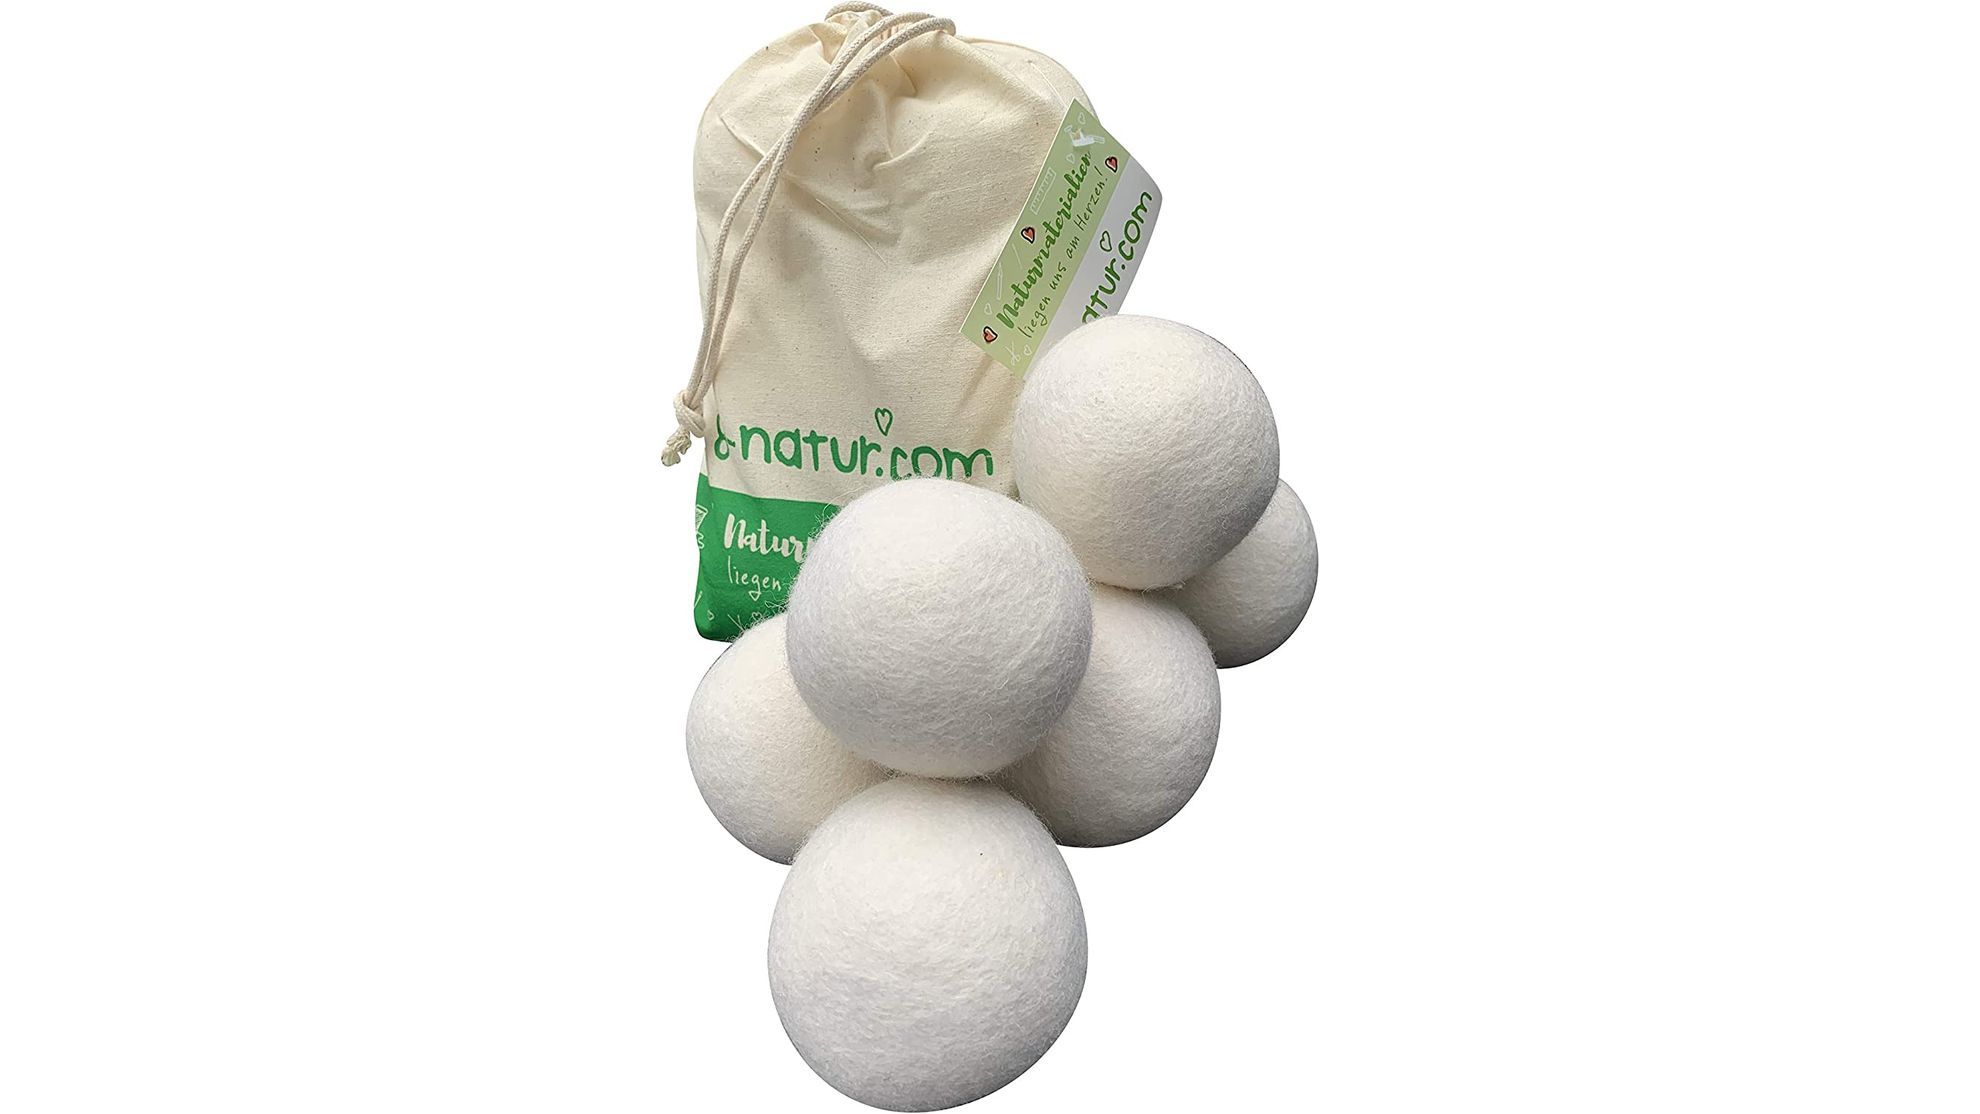 Las (milagrosas) bolas para la secadora que reducen el tiempo de secado, quitan las arrugas y suavizan la ropa de forma natural